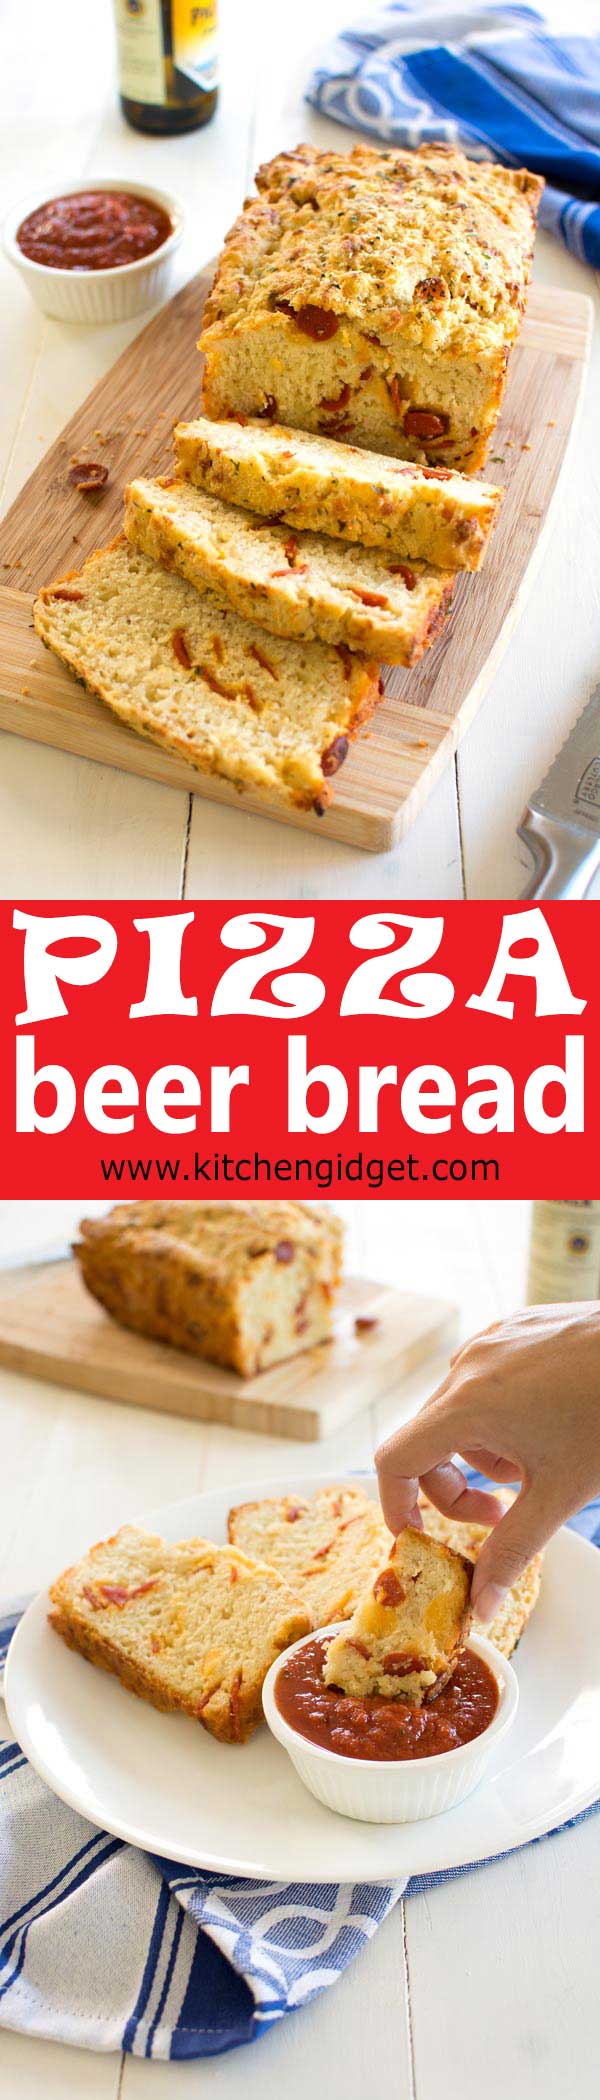 Cómo hacer pan de pizza de pizza fácil con queso y pepperoni. Pizza cerveza receta de pan que es increíblemente delicioso!